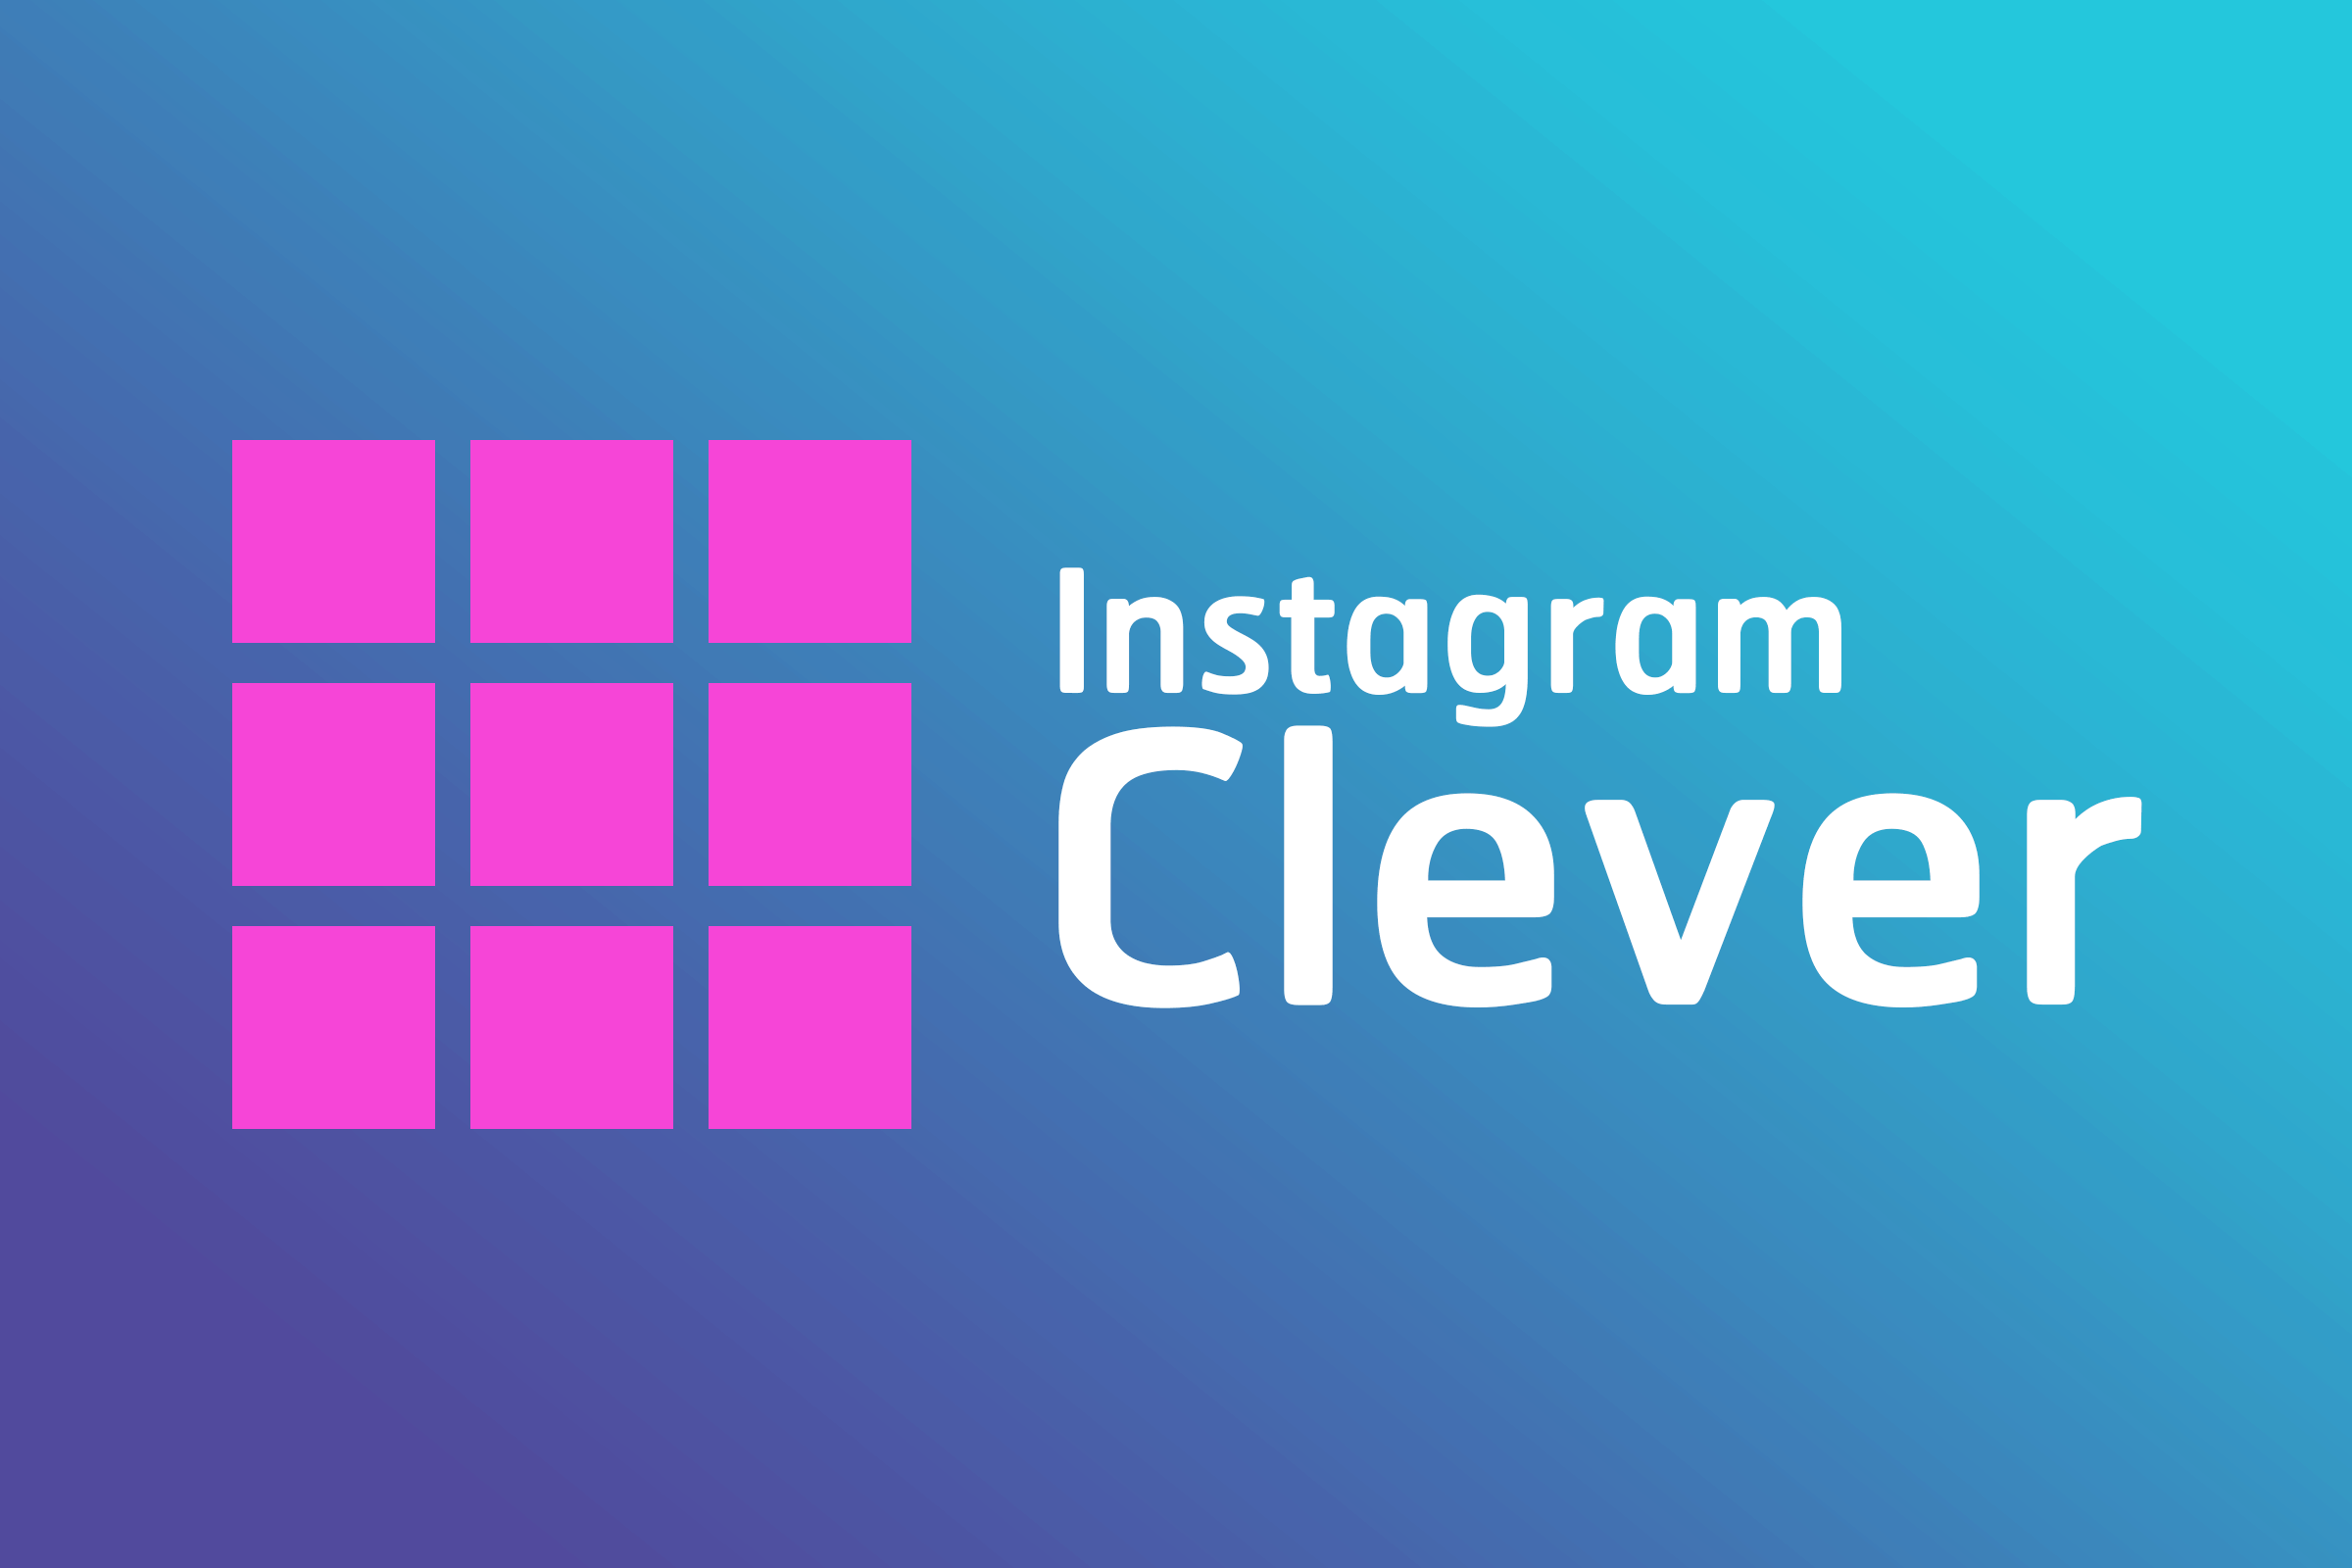 ตัวอย่าง Instagram “Clever” เทคนิคการโพสต์แบบมีสไตล์